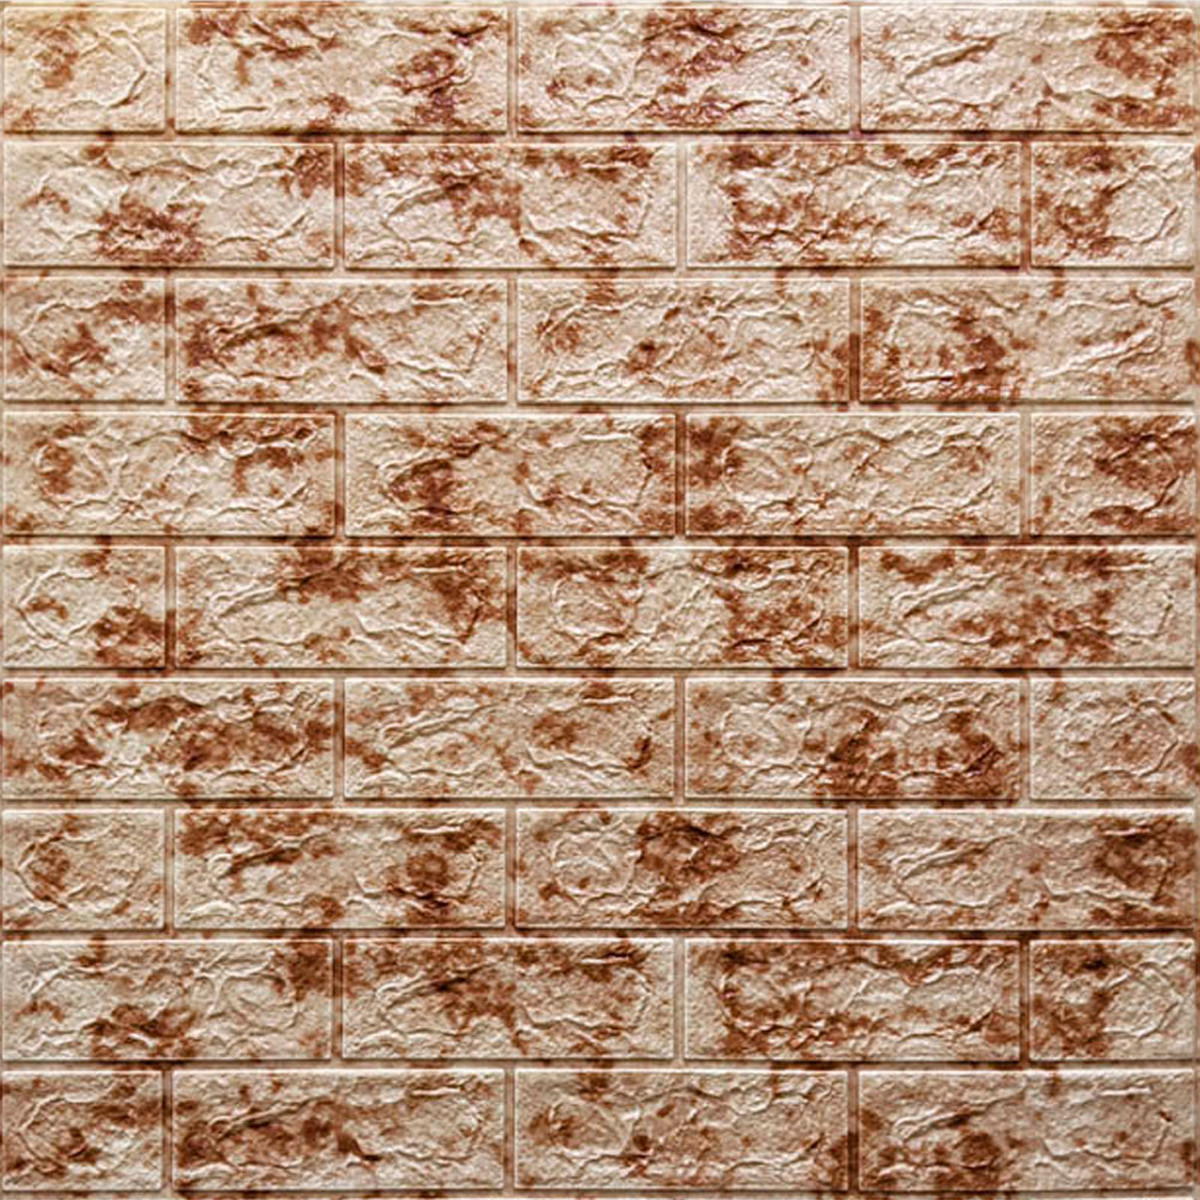 М'які самоклеючі панелі для стін, стінові панелі 3Д в інтер'єрі, панелі для стін магазину Червоний мармур 700х770х3мм (063)